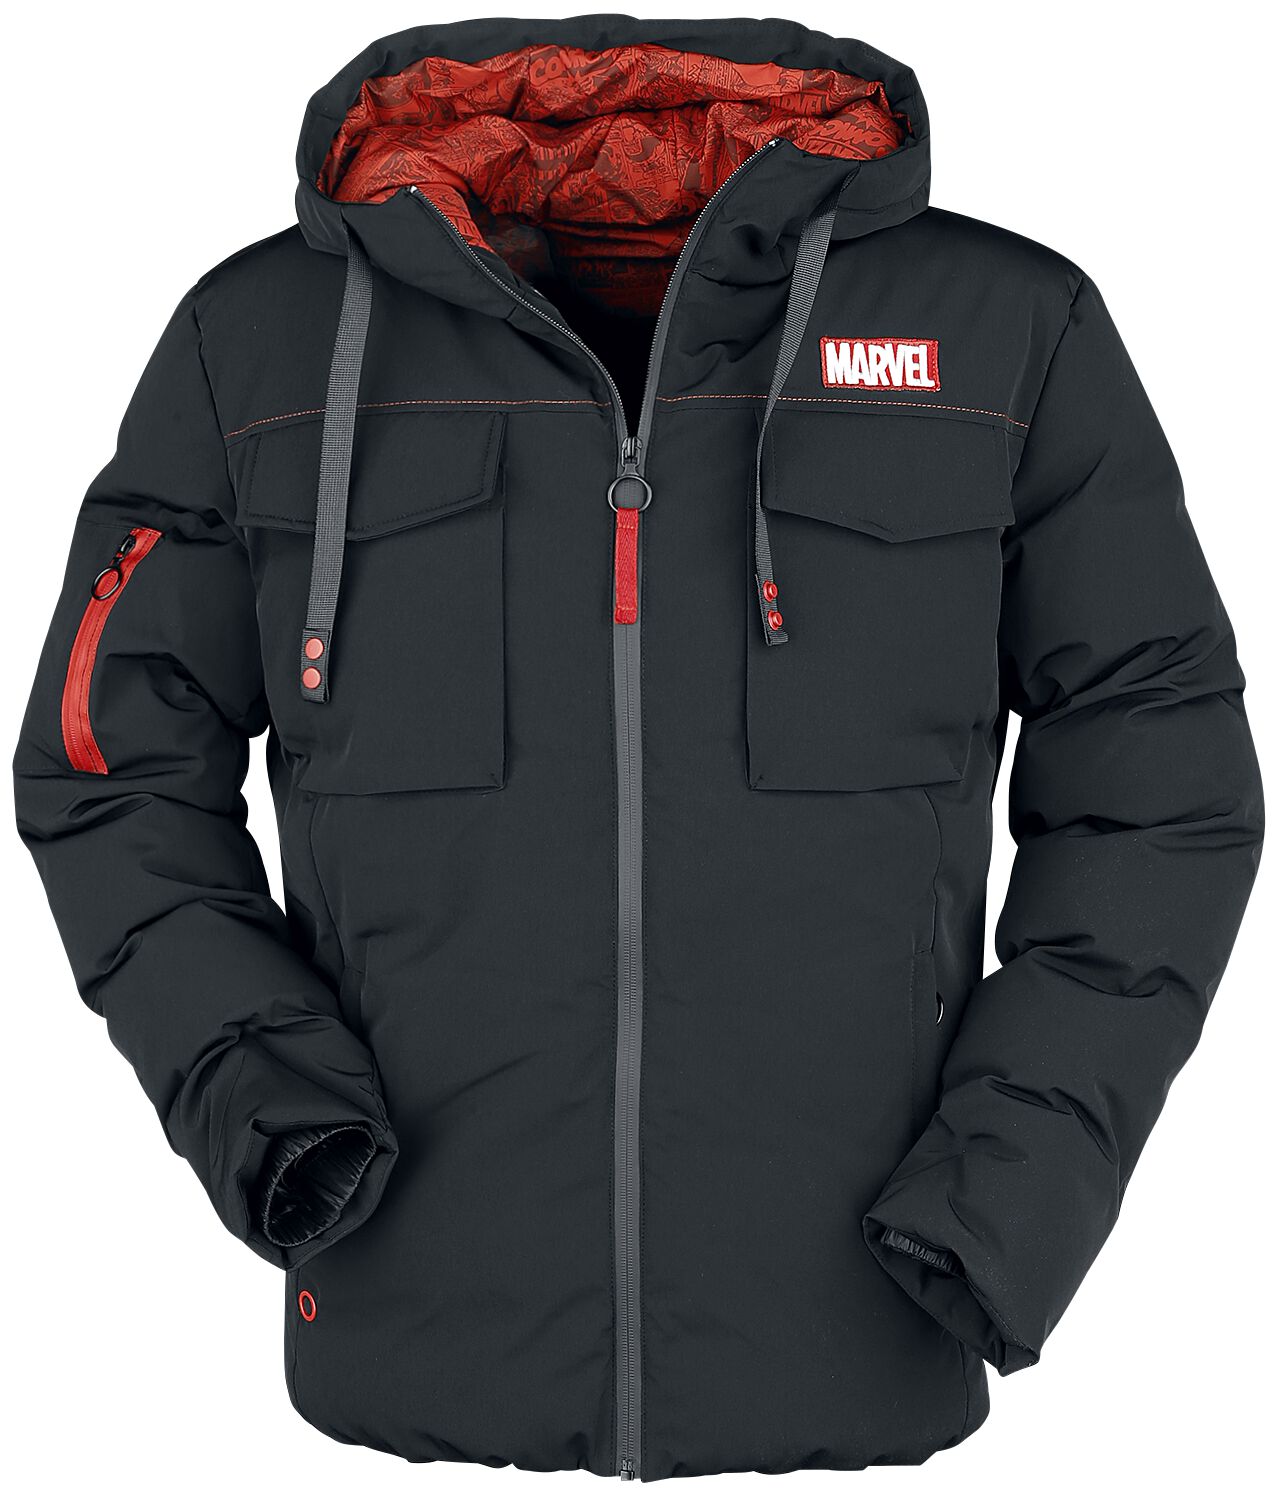 Marvel - Marvel Winterjacke - Marvel Logo - S bis XL - für Männer - Größe XL - schwarz  - EMP exklusives Merchandise!